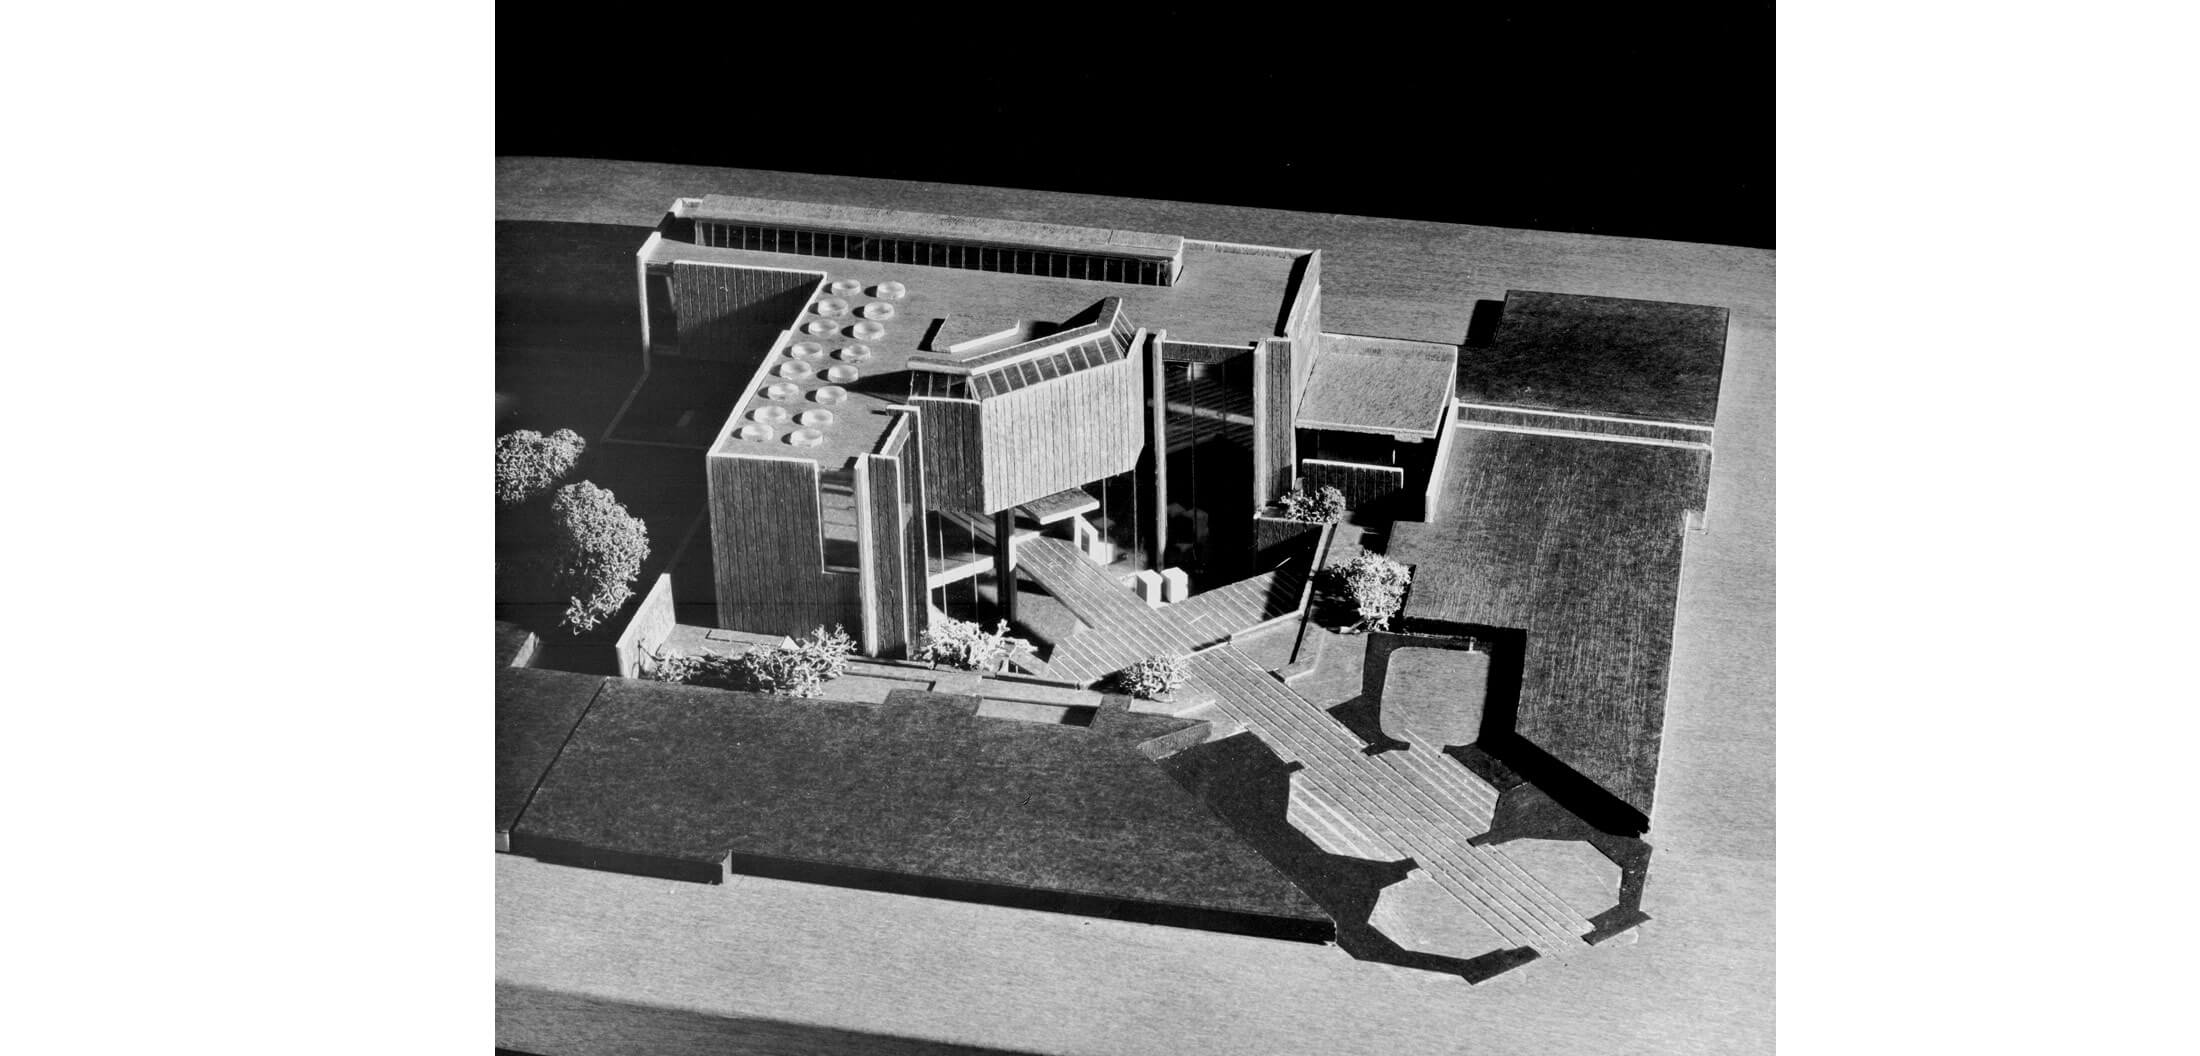 Adaptacija postojeće i projekt nove zgrade Moderne galerije u Zagrebu; maketa, 1969. – 1975. (projekt, neizvedeno)